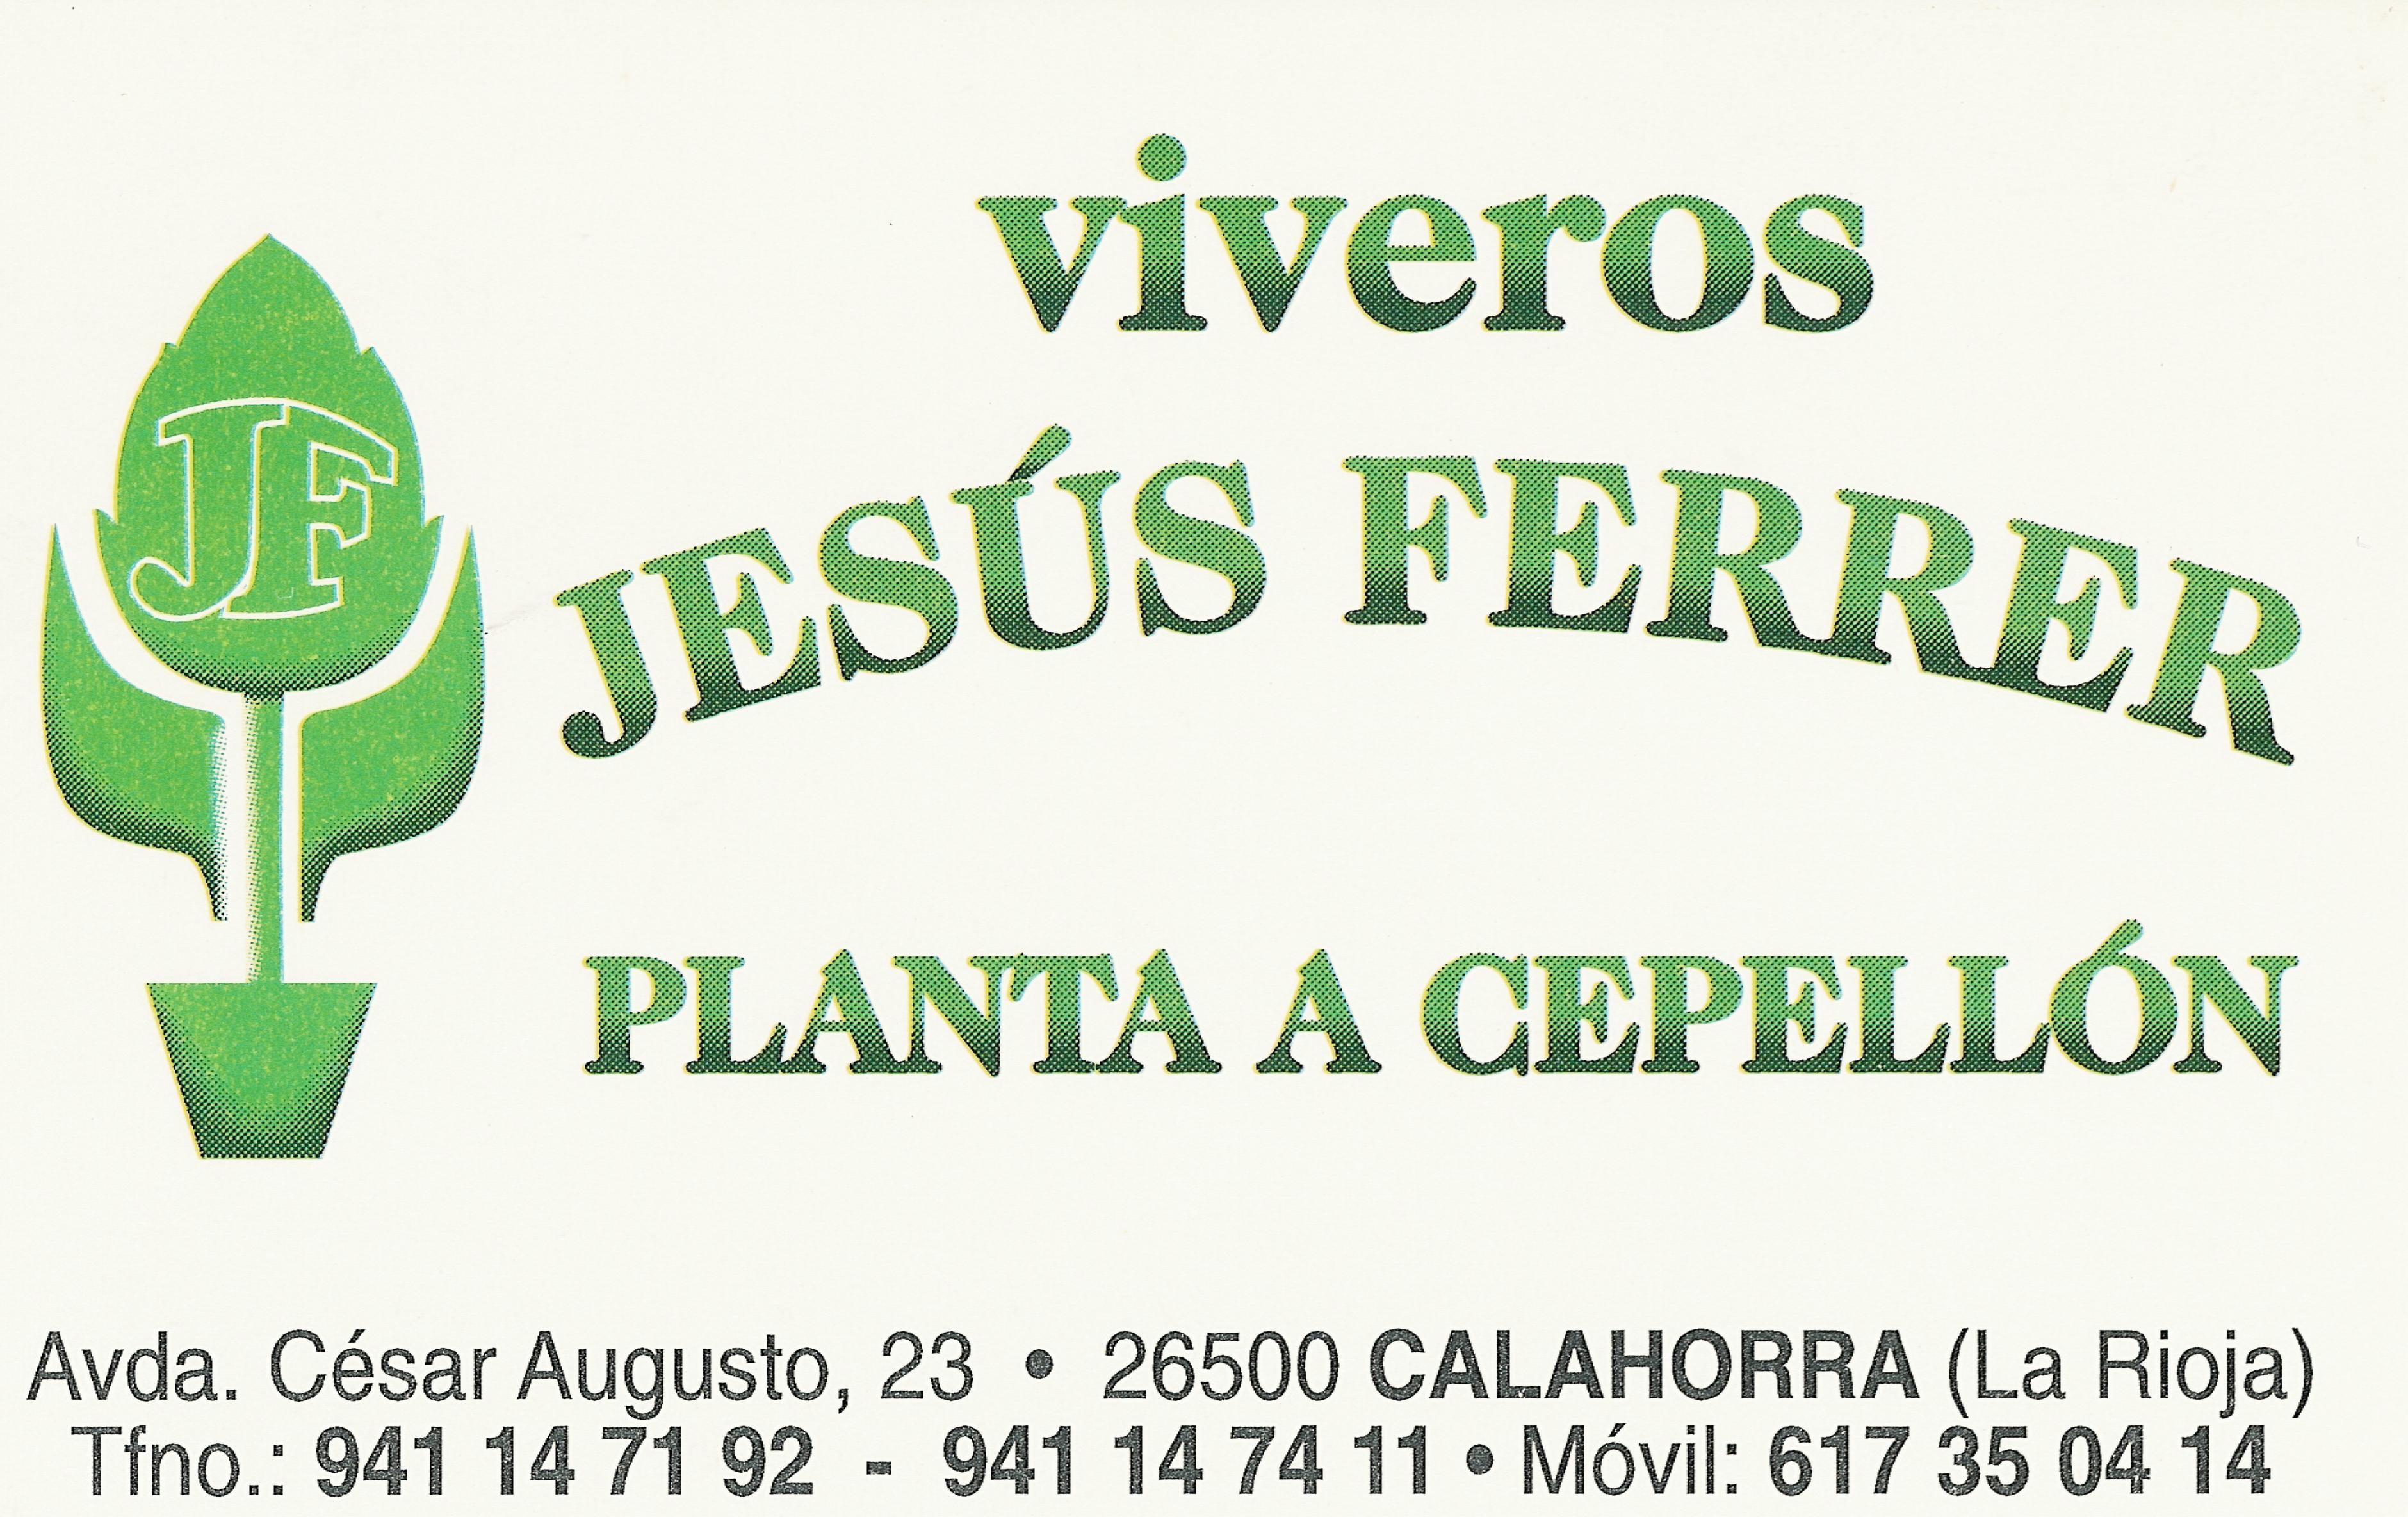 Viveros Ferrer